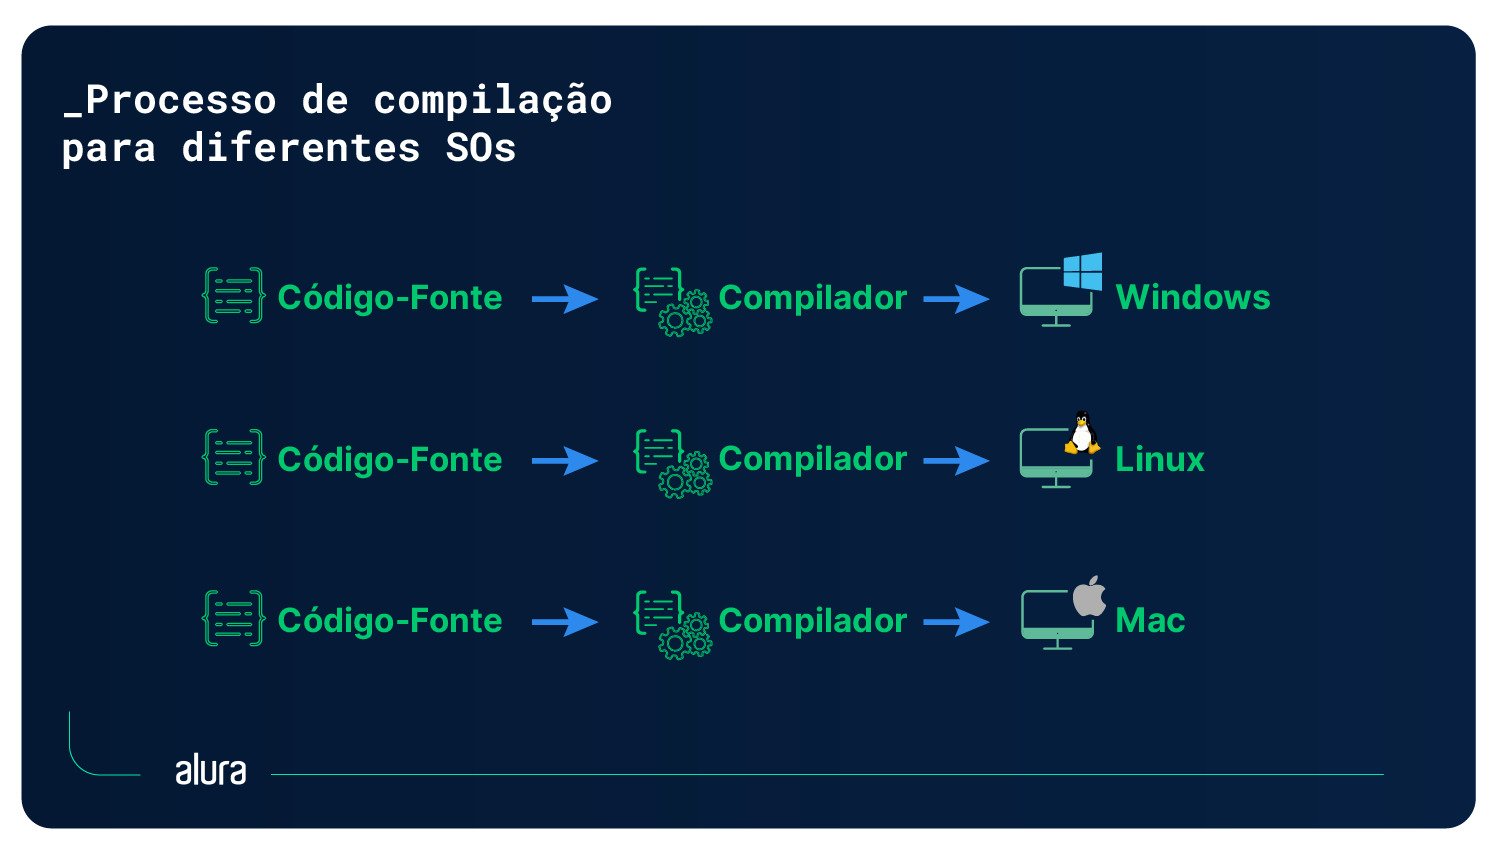 Diagrama ilustrando o processo de compilação tradicional para diferentes sistemas operacionais (Windows, Linux e Mac).